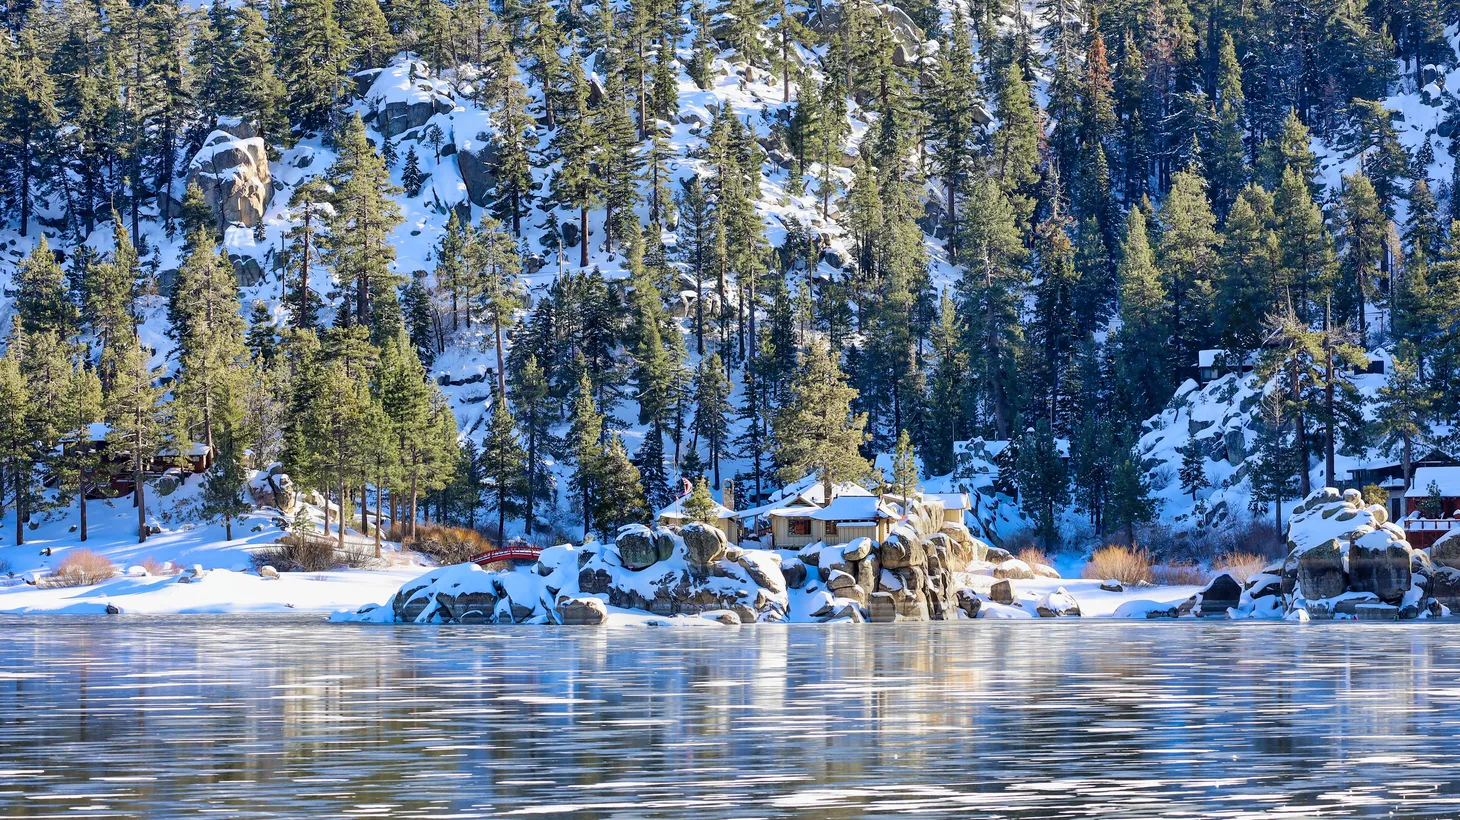 Snow is seen at Big Bear Lake, January 2023.